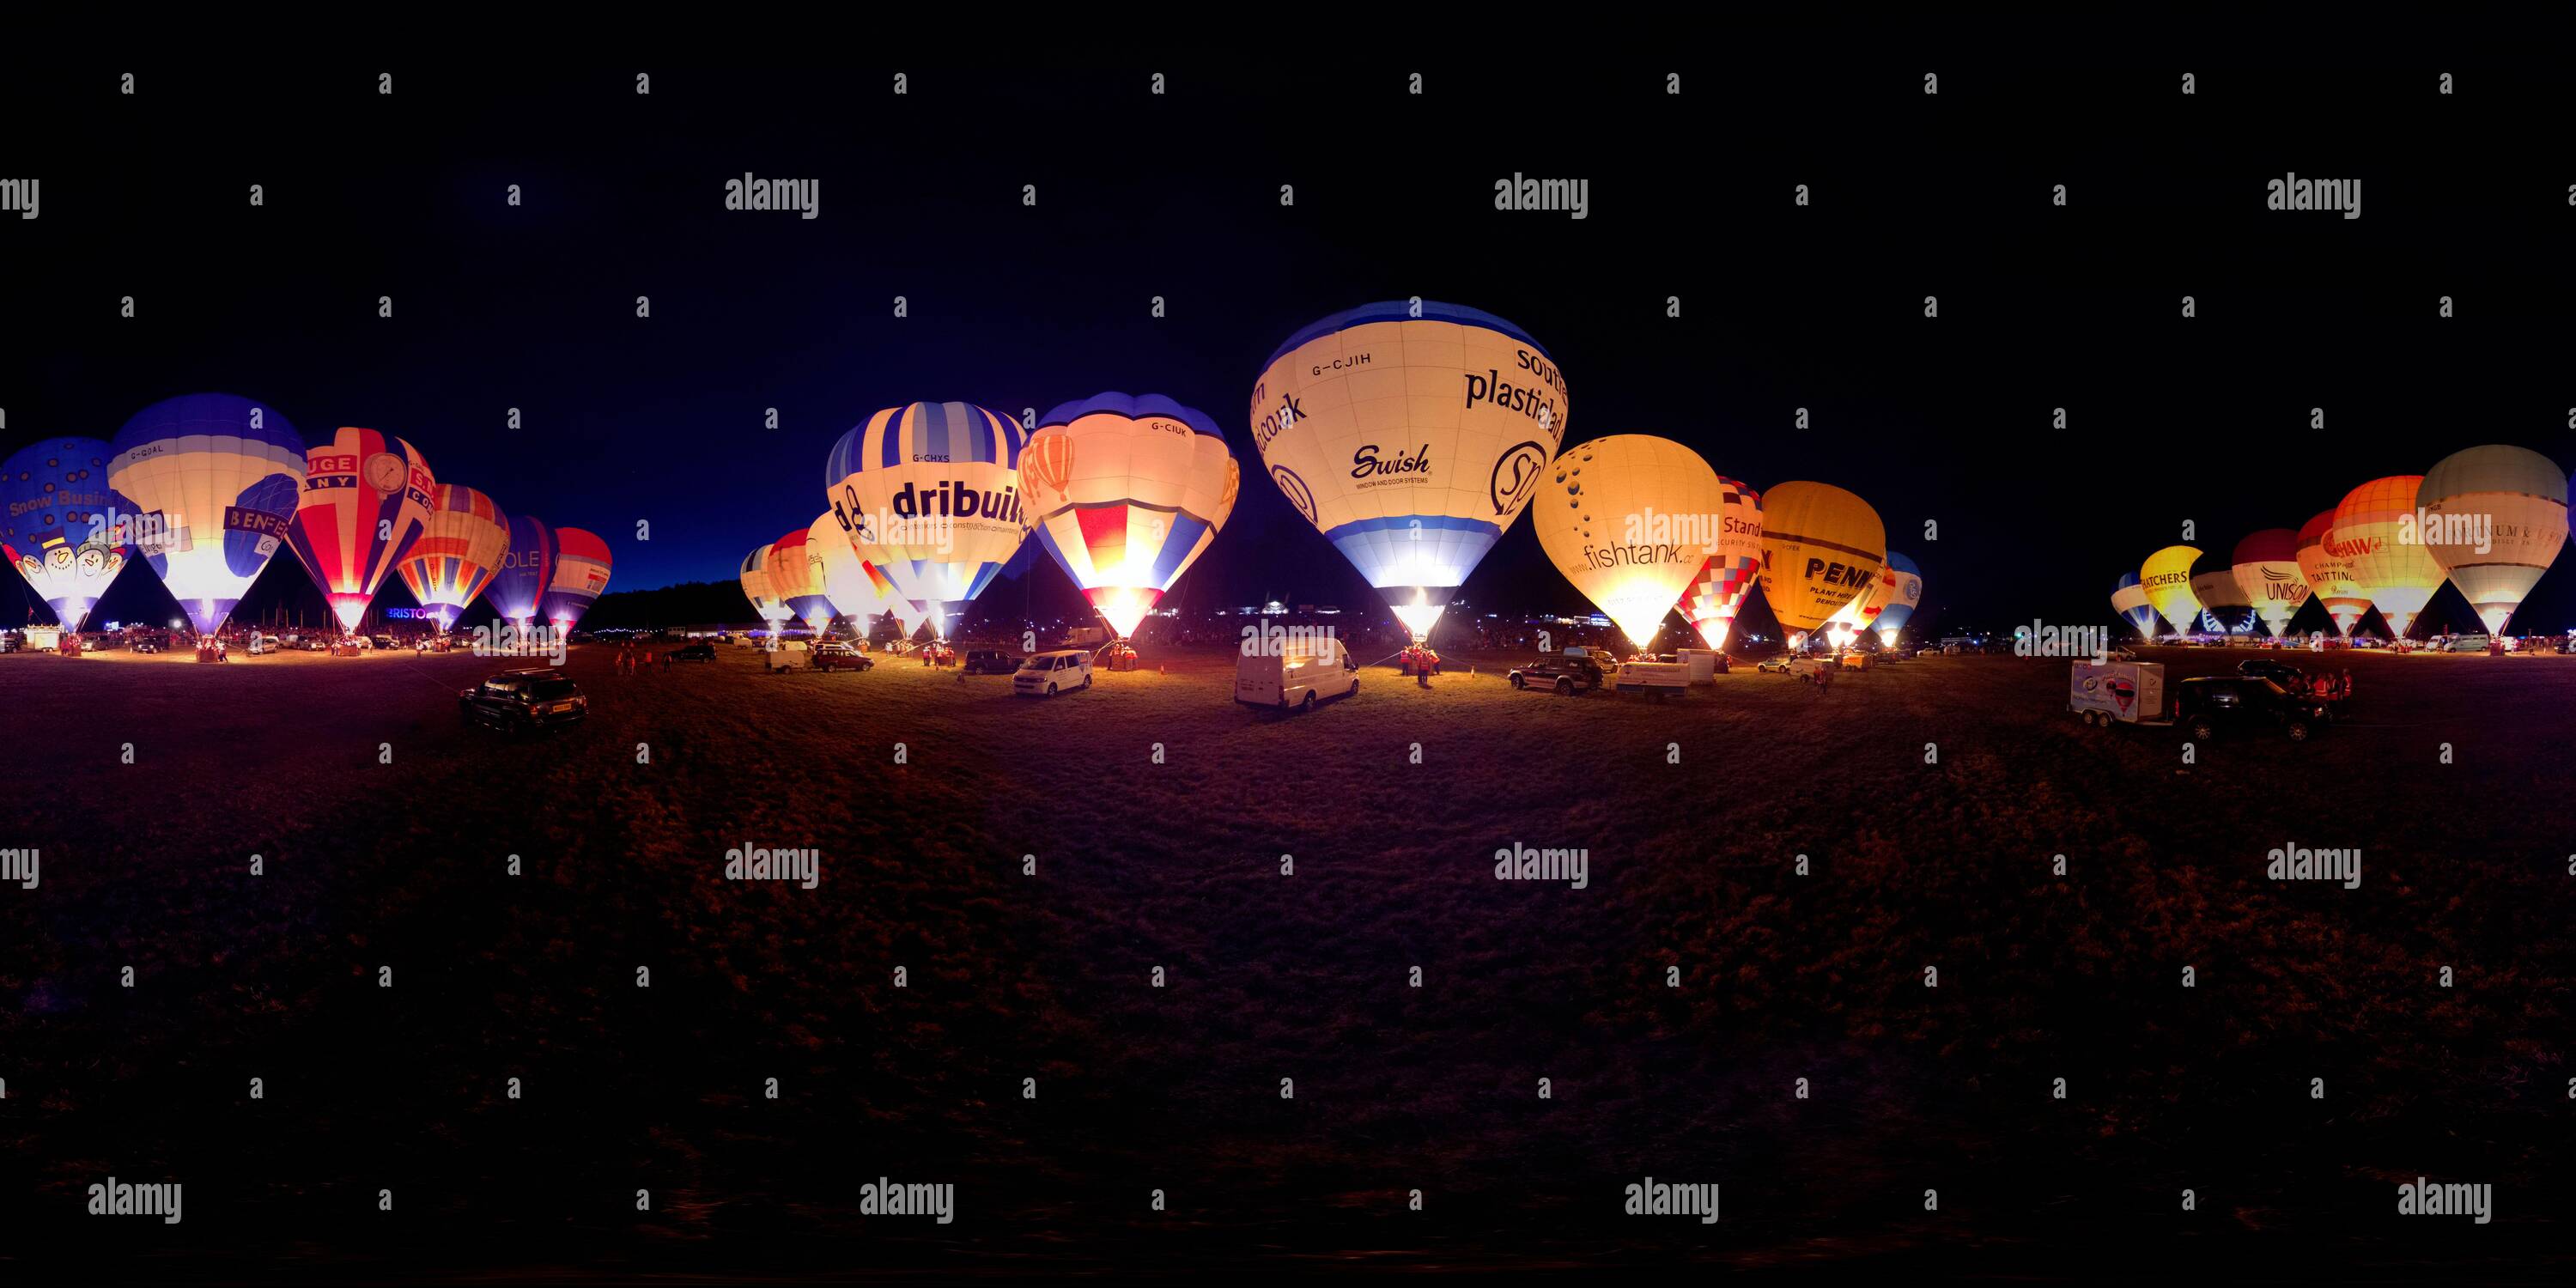 Vue panoramique à 360° de L'incroyable spectacle « Nightglow » au Bristol Balloon Festival. 2018 IMAGE CRÉDIT : MARK PAIN / IMAGE DE STOCK D'ALAMY